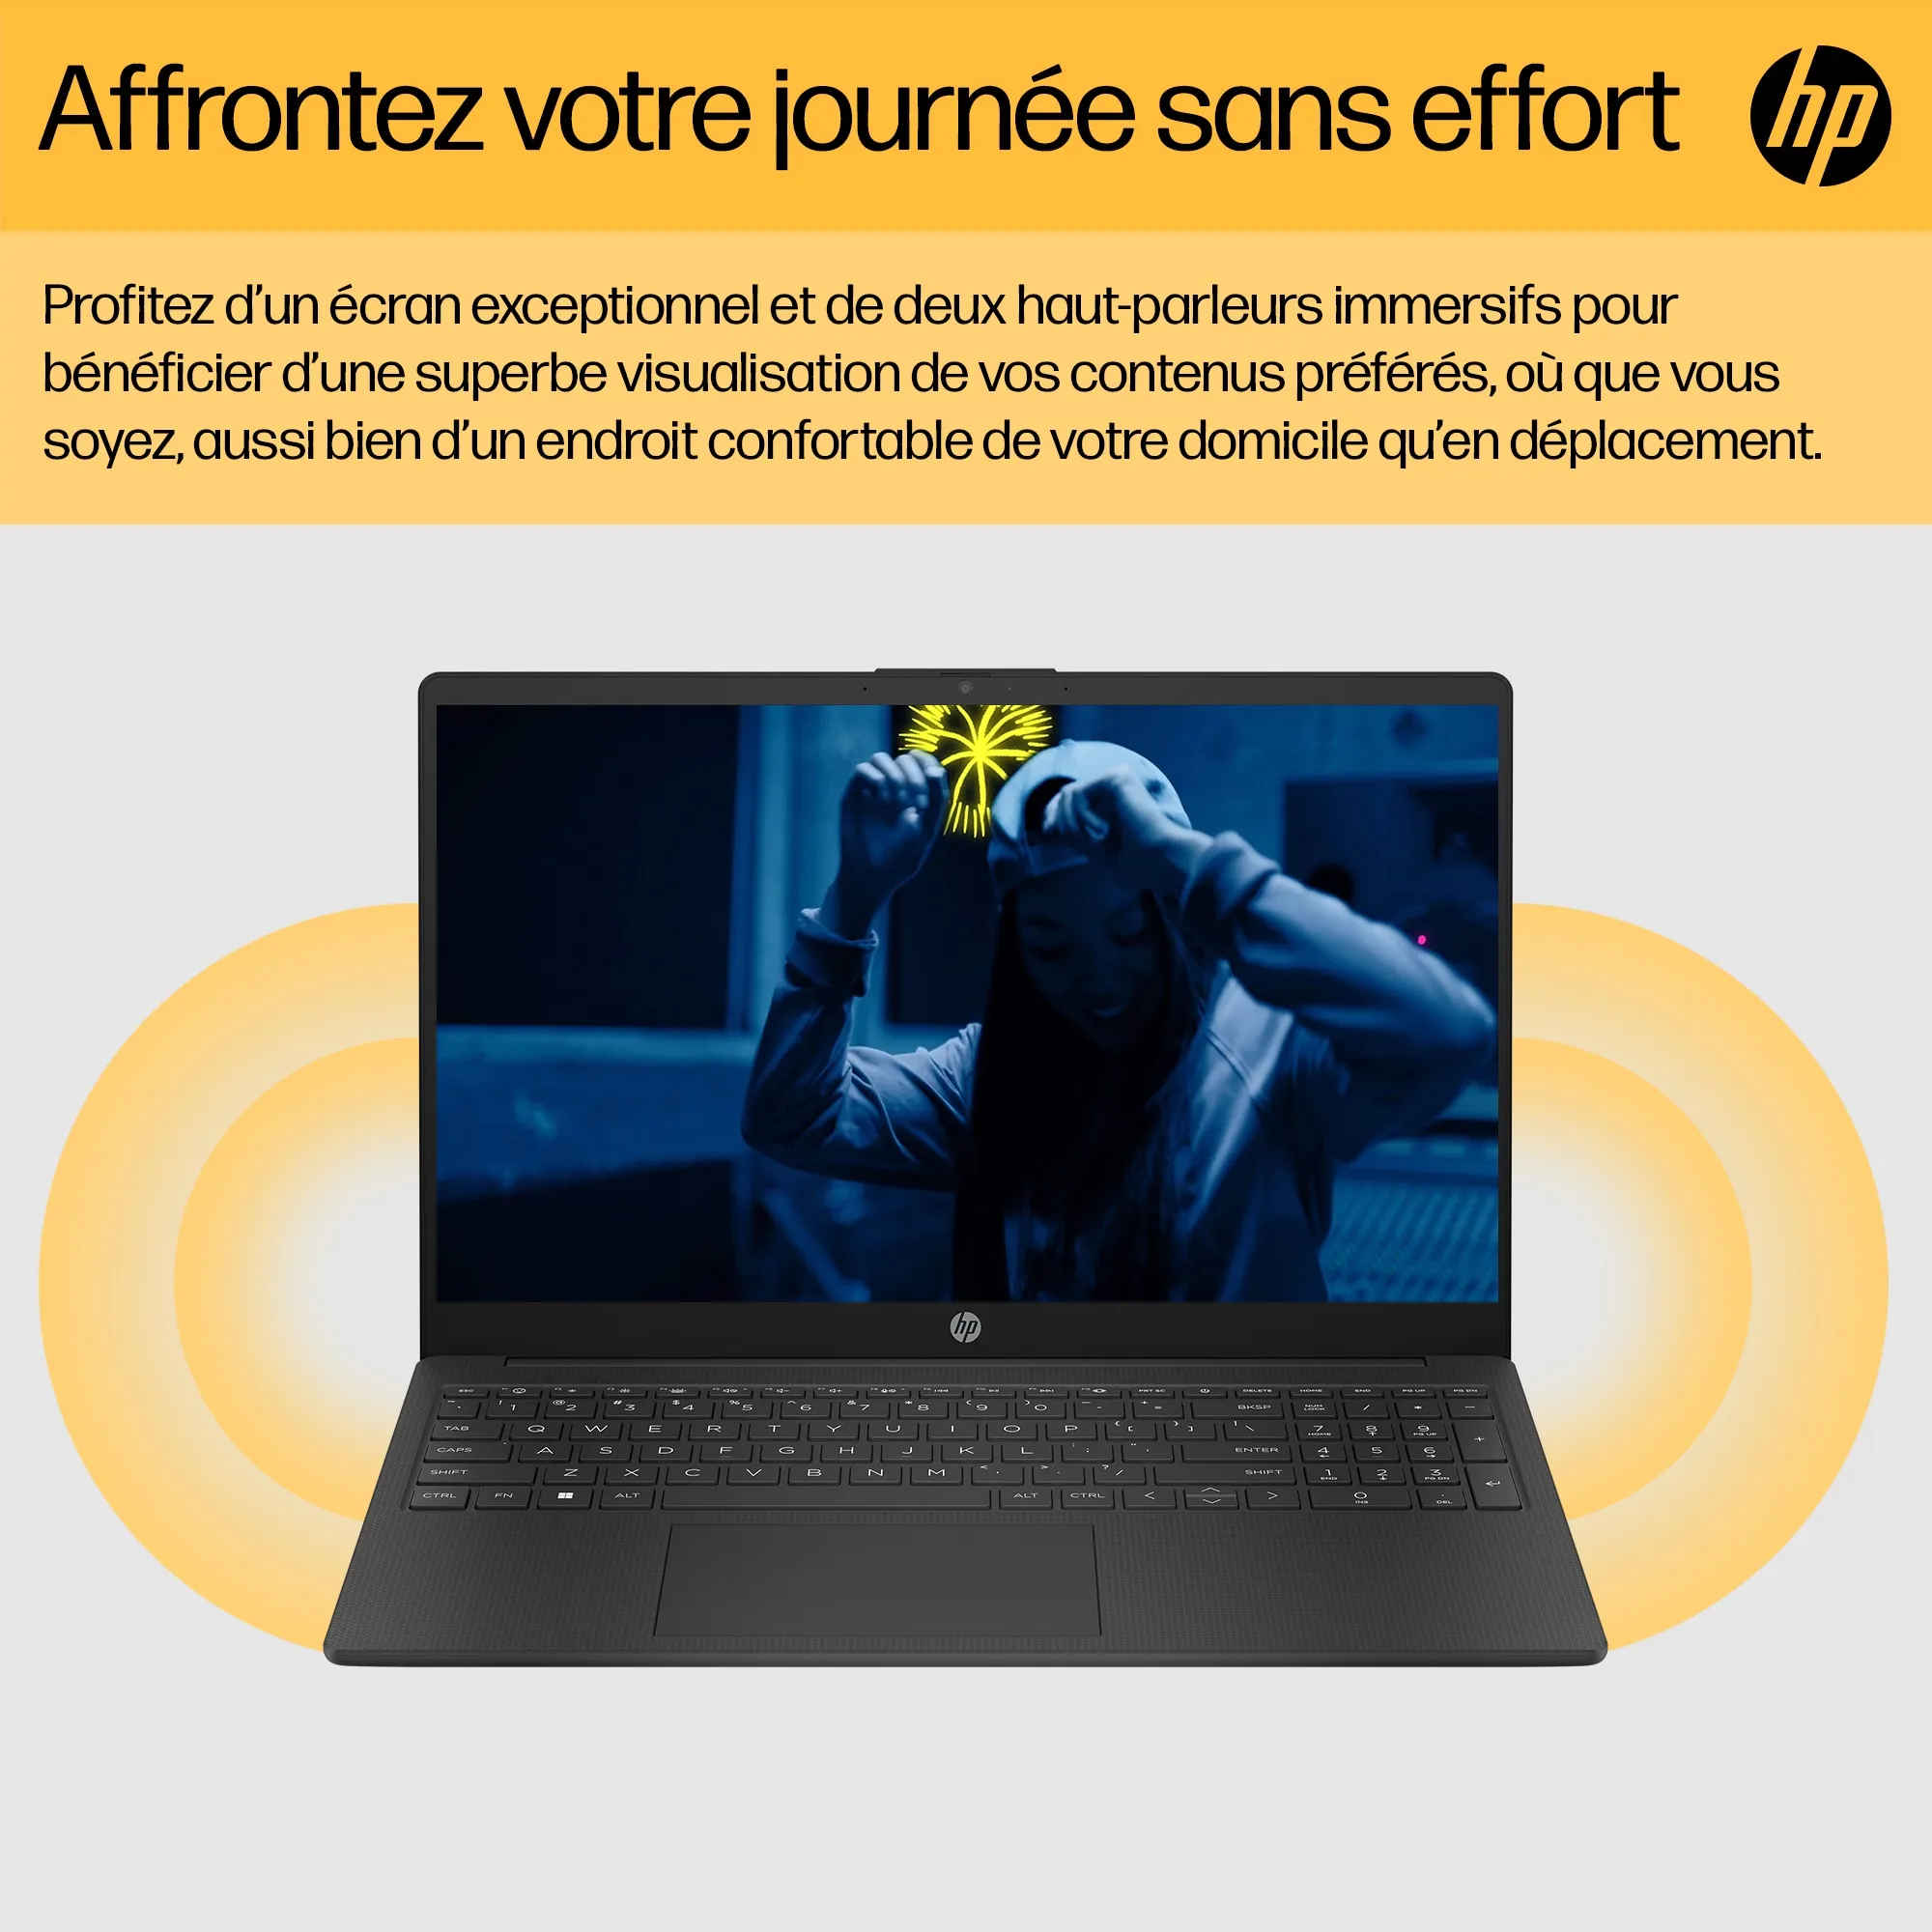 HP Laptop 15-fc0047nf HP - visuel 1 - hello RSE - Clavier pleine taille avec pavé numérique intégré